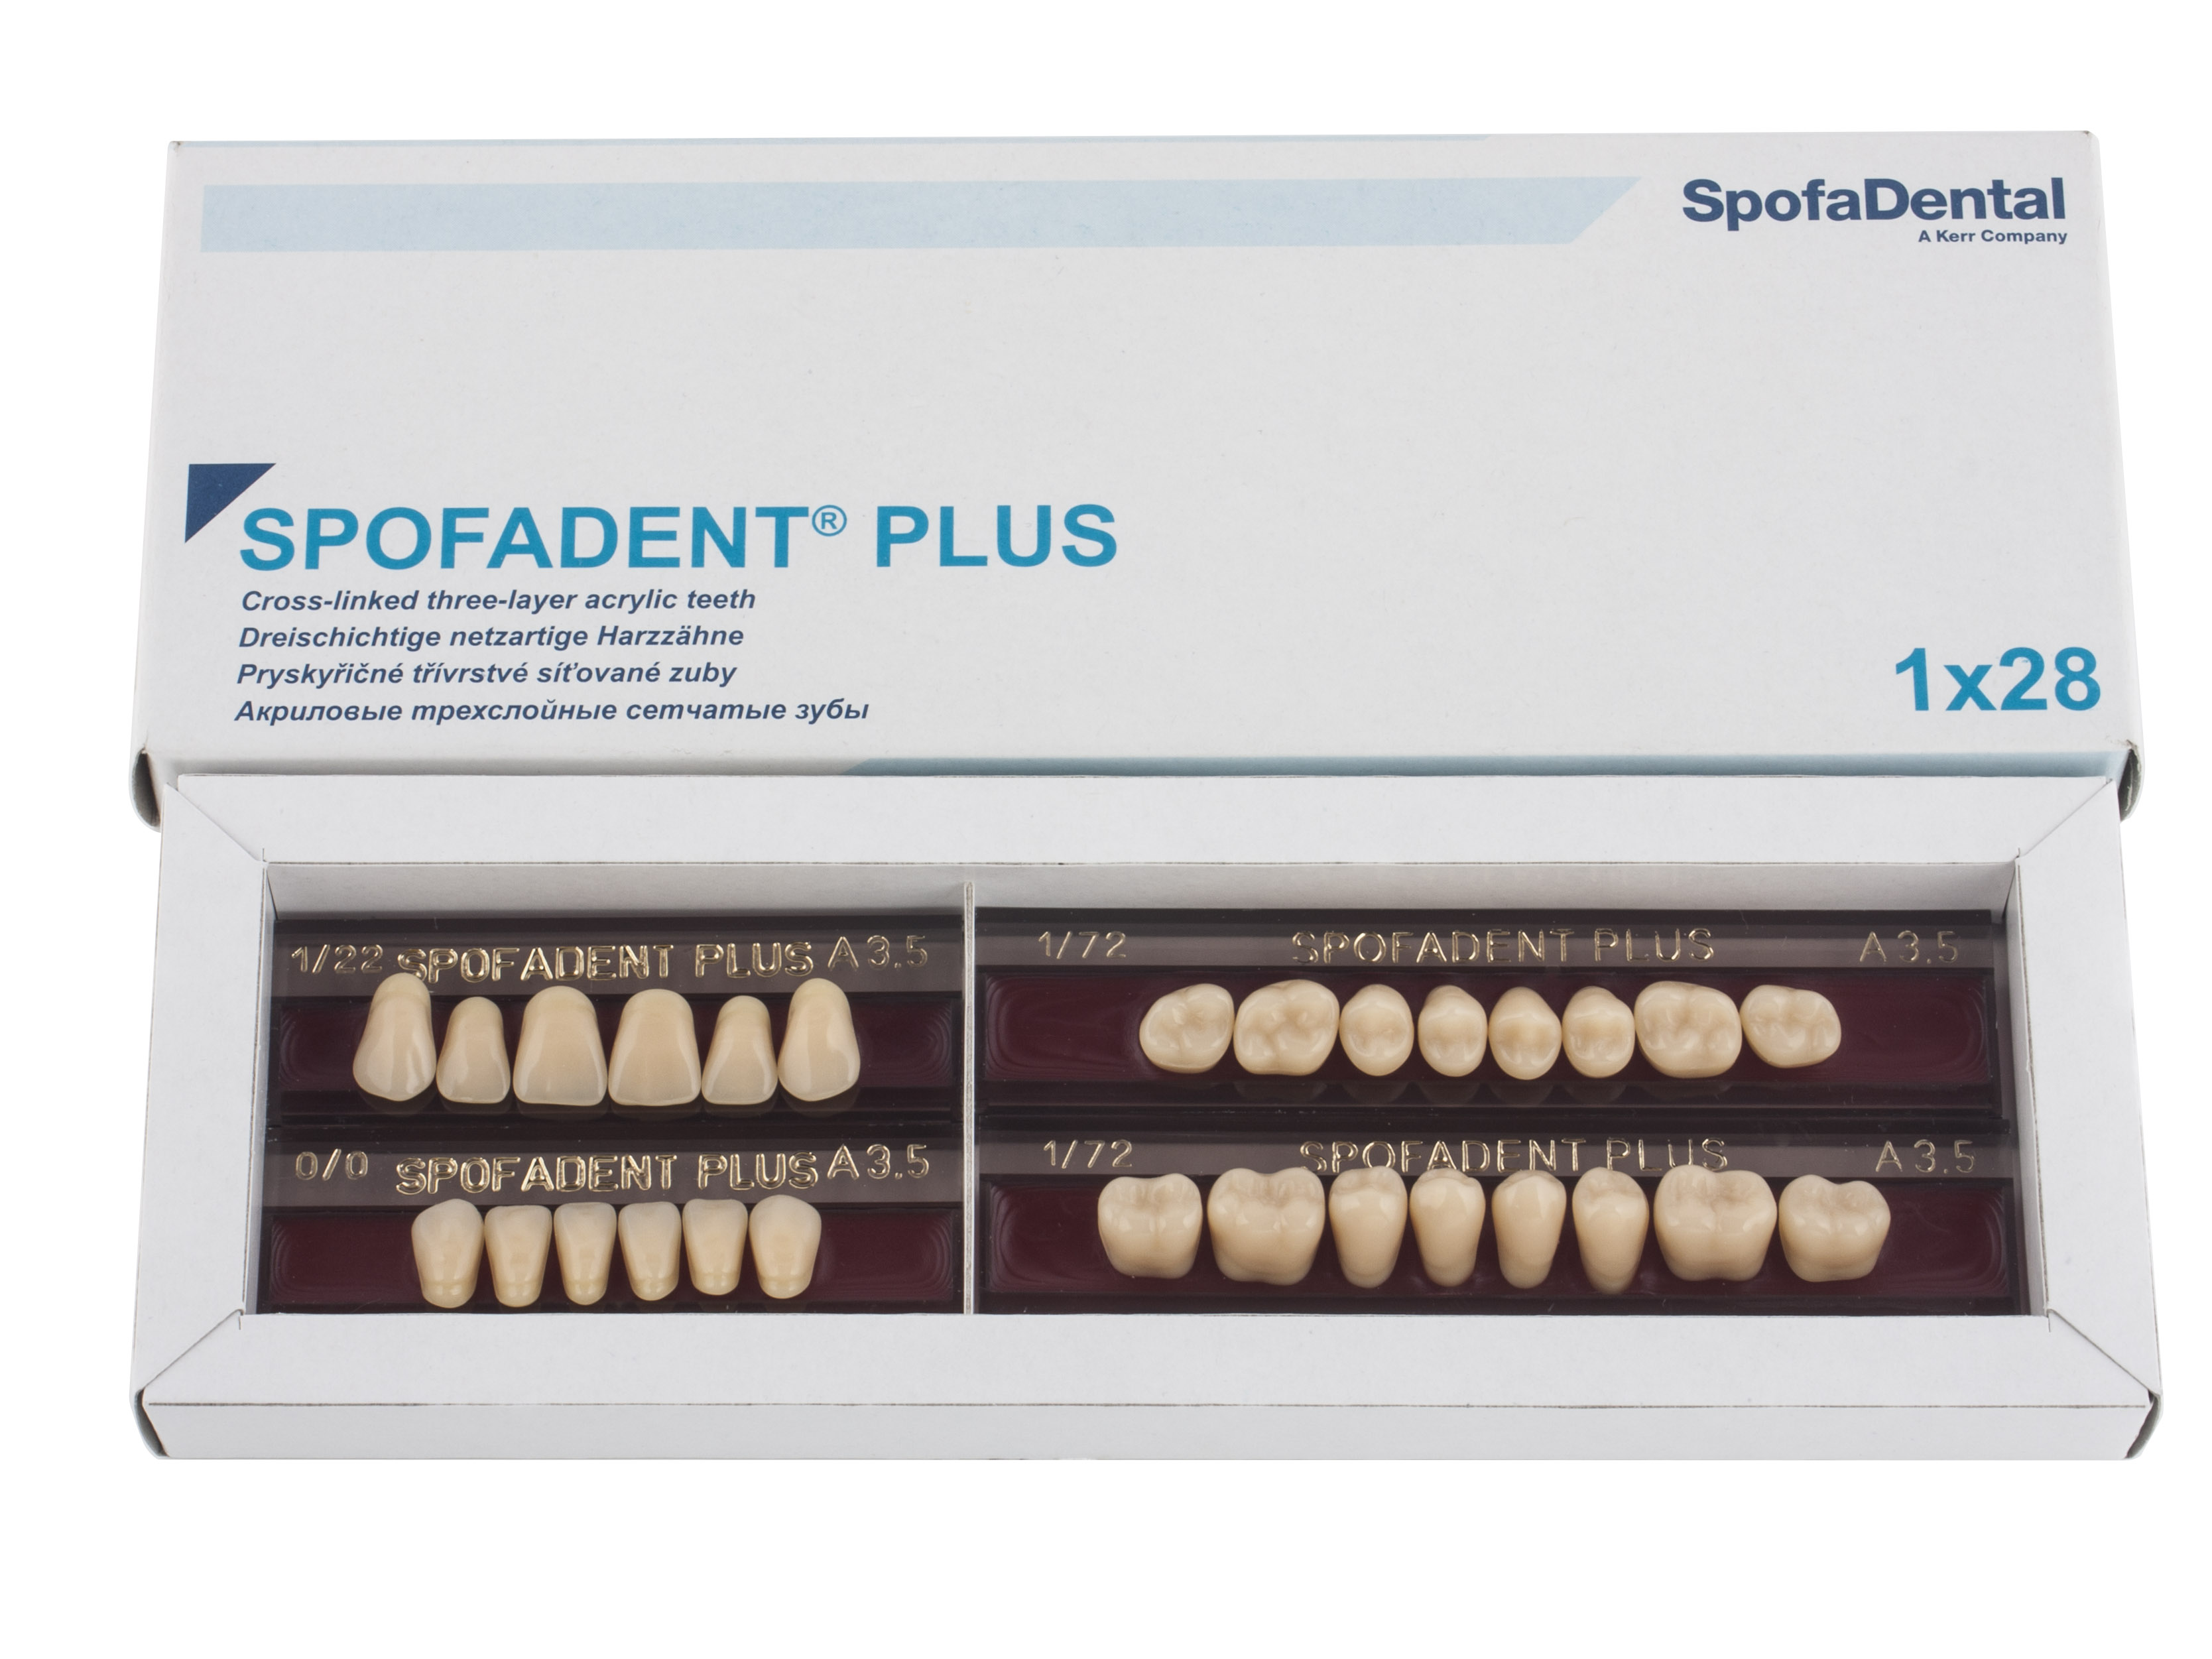 Spofadent Plus (А3,5) 1/22-0/0-1/72